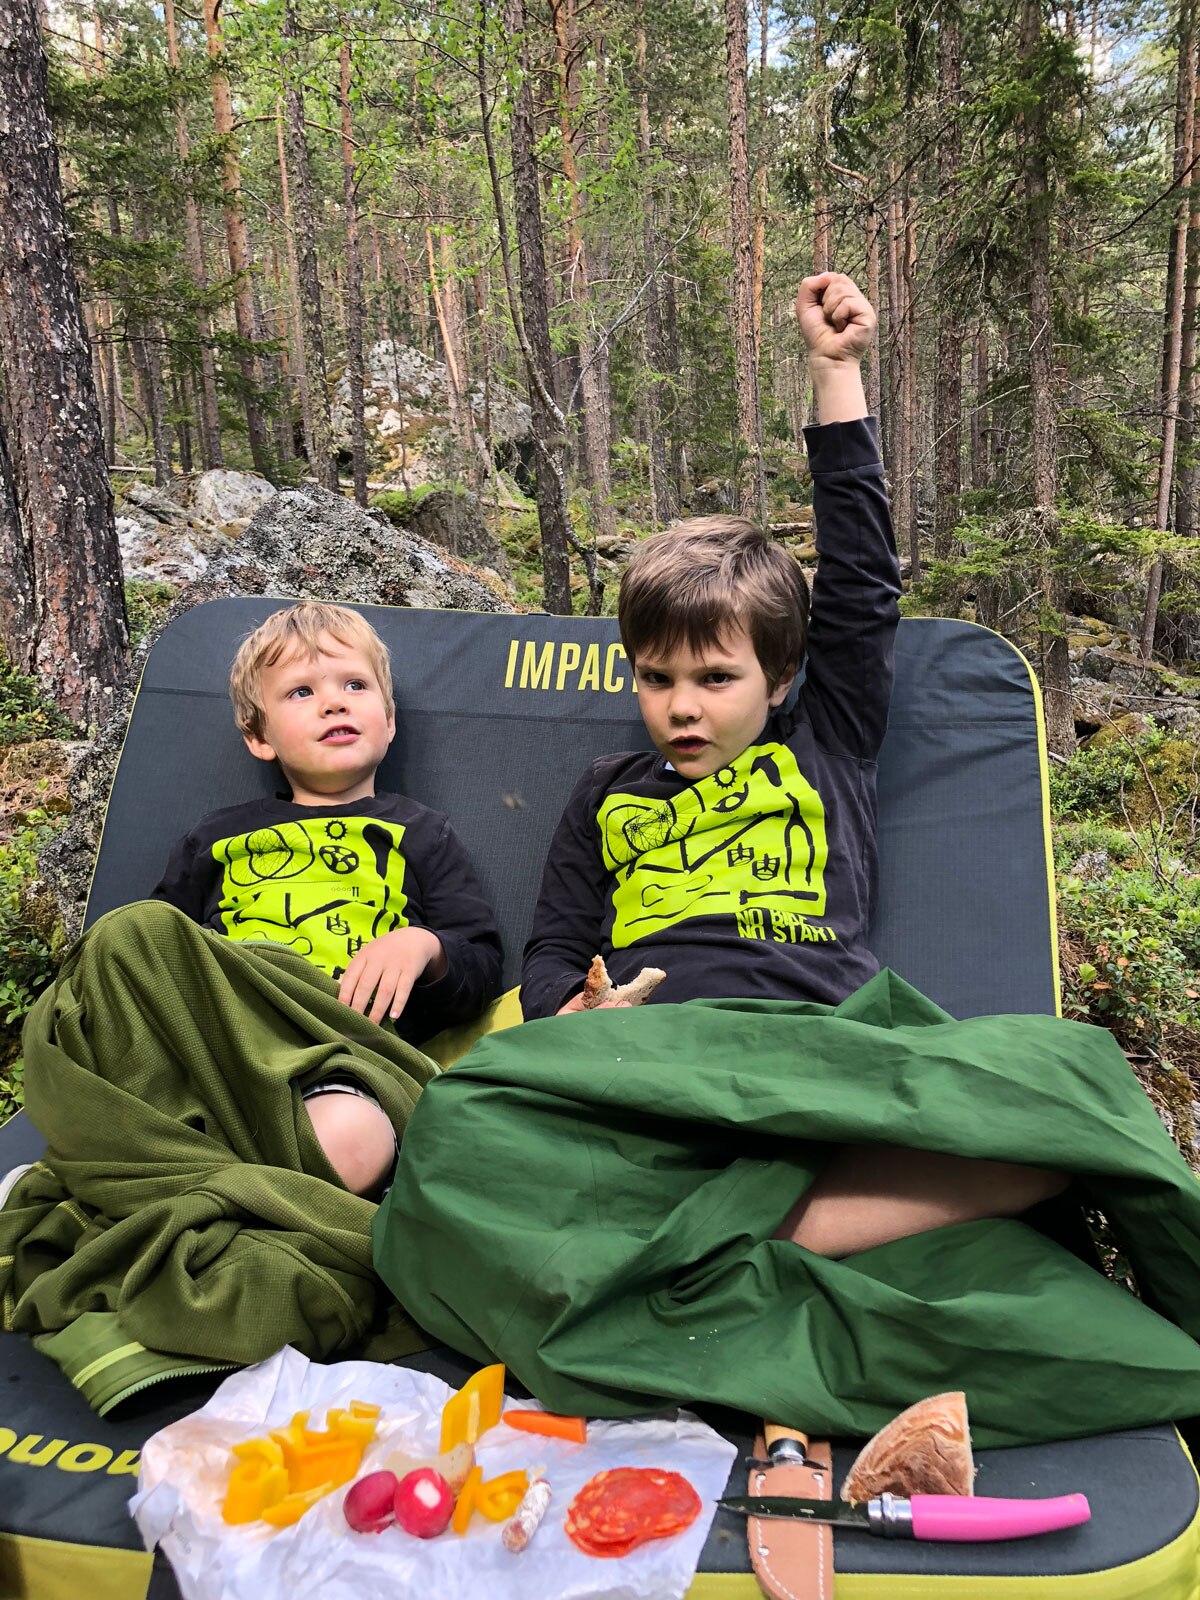 Gutes Essen hält bei Laune, und für die herbstlichen Bouldertage im Wald einfach eine Decke oder den Schlafsack mitnehmen!